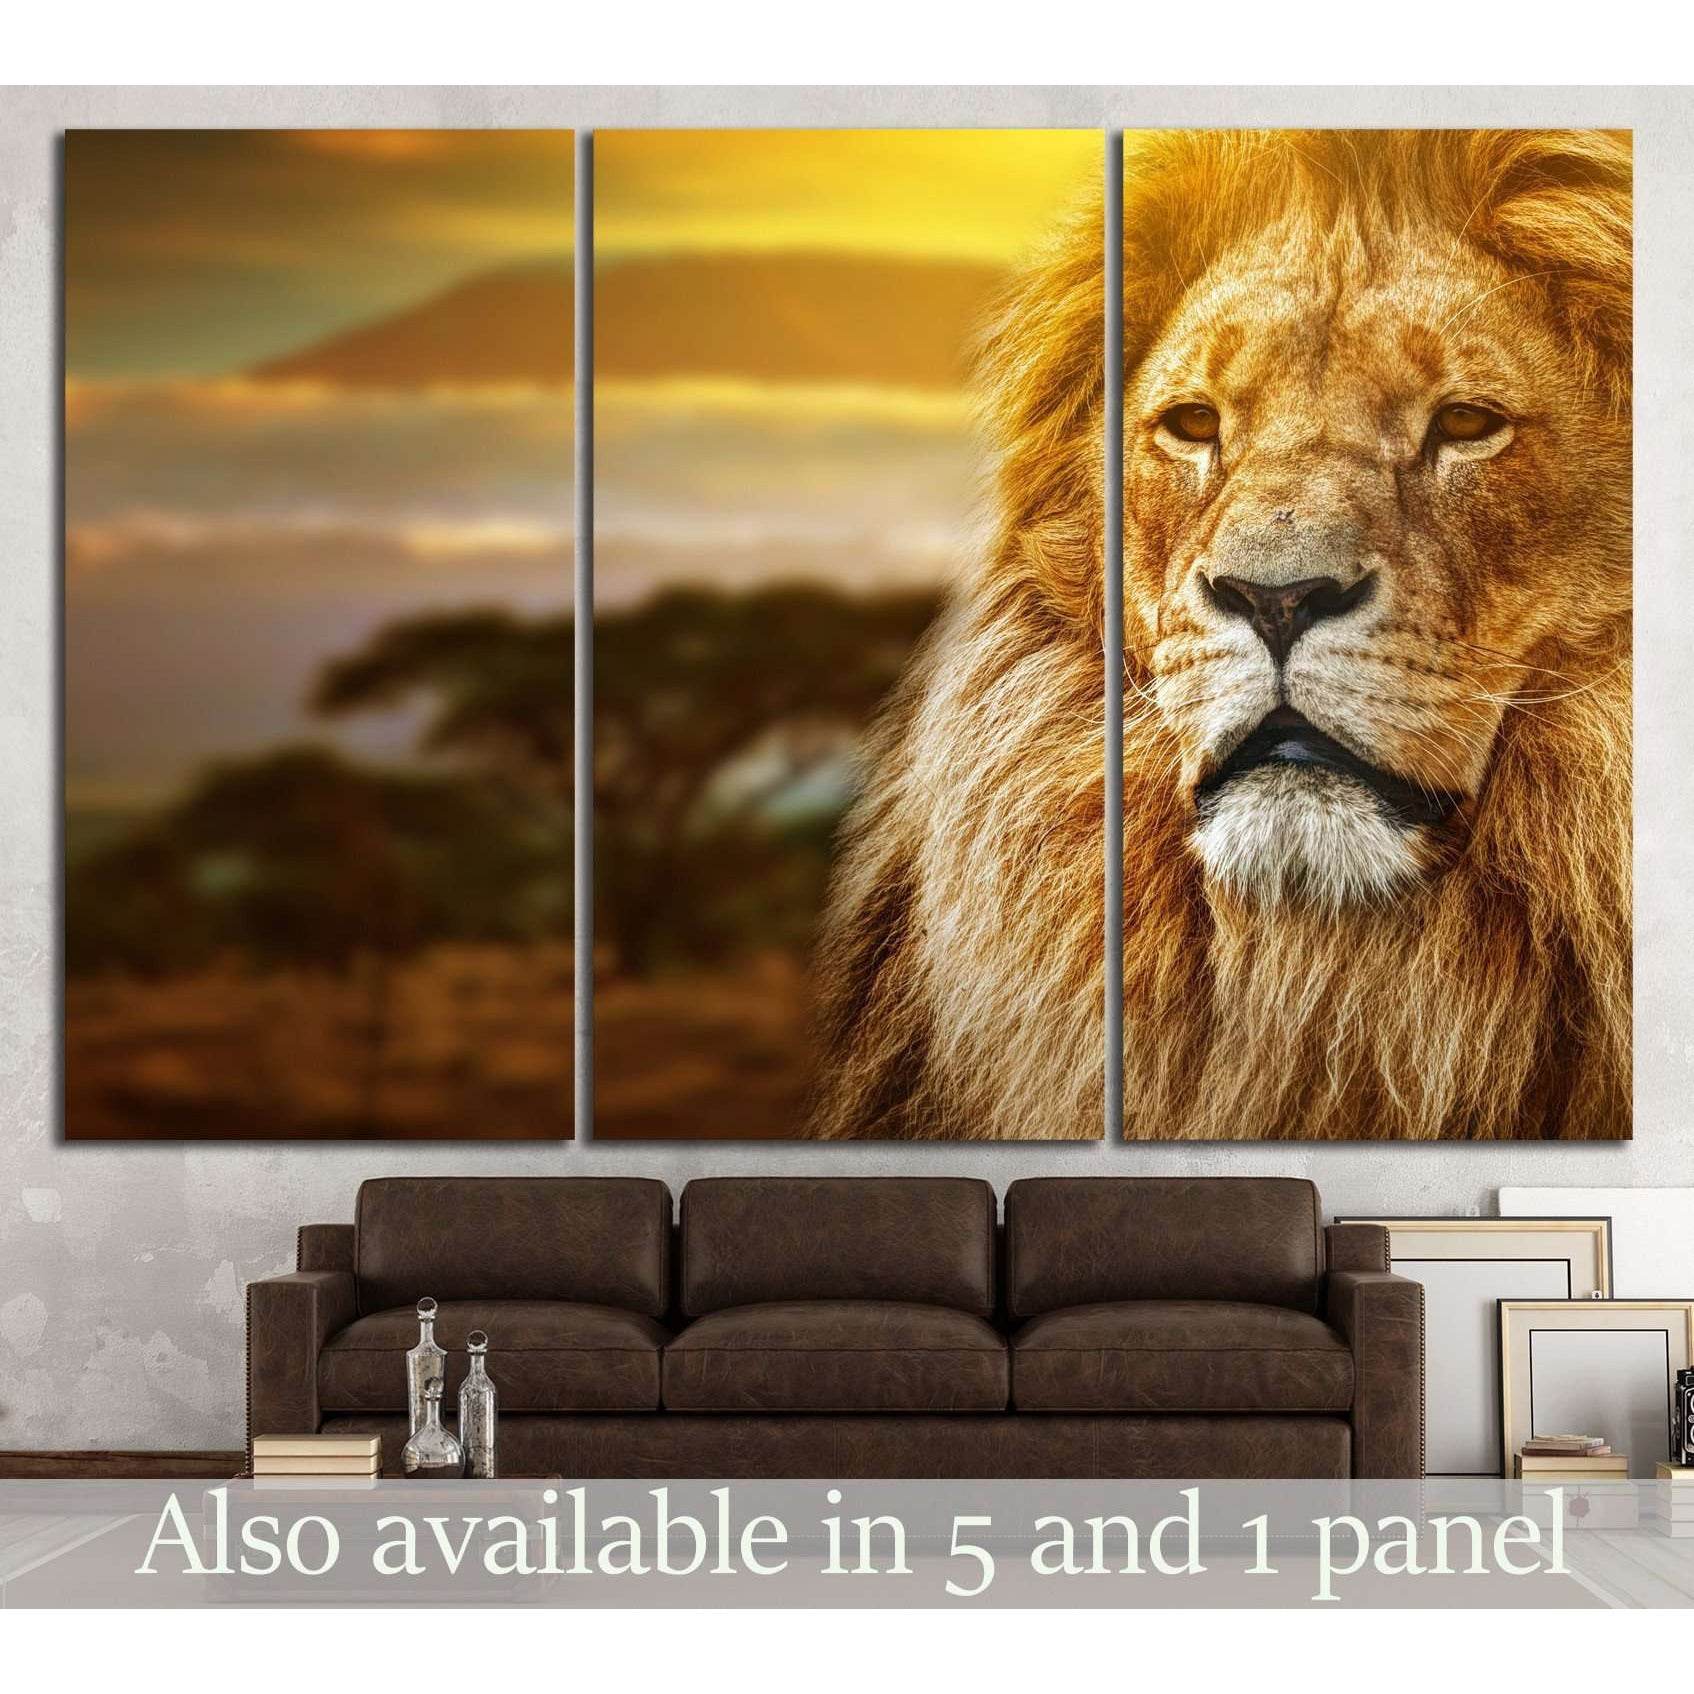 Lion portrait on savanna landscape №1115 Ready to Hang Canvas Print